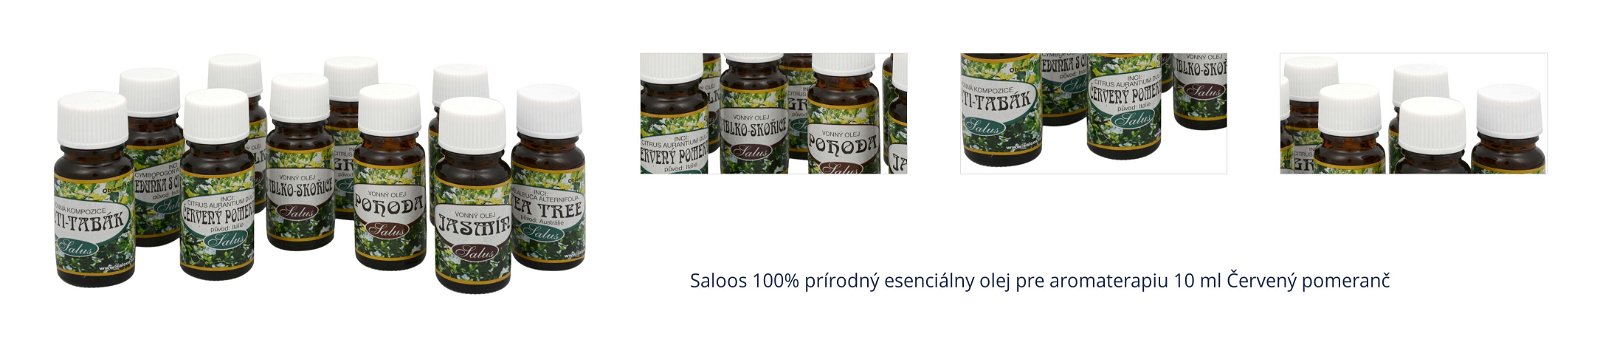 Saloos 100% prírodný esenciálny olej pre aromaterapiu 10 ml Červený pomeranč 1